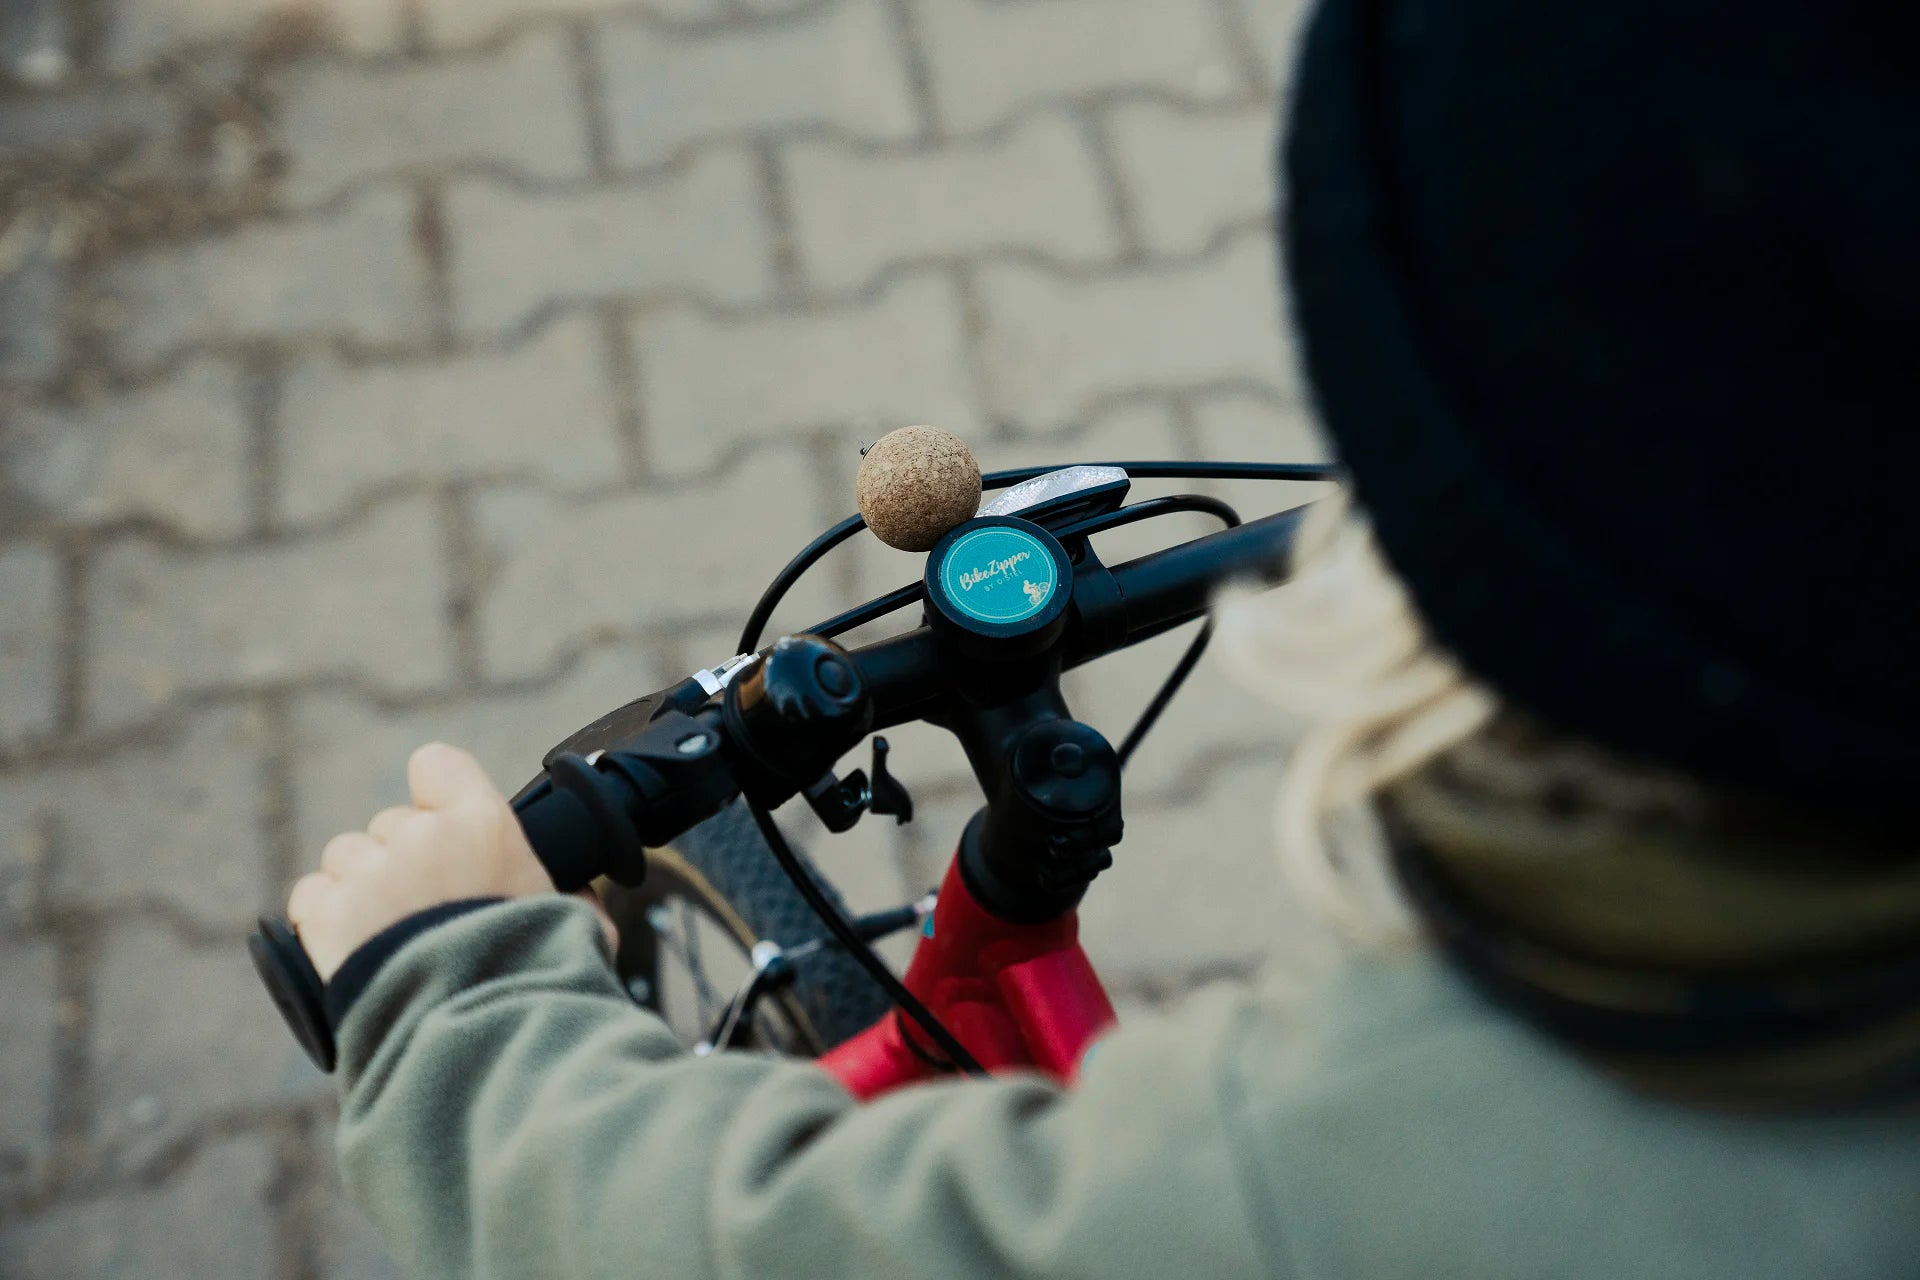 Fahrrad-Abschleppgurt, einziehbares Eltern-Kind-Fahrrad